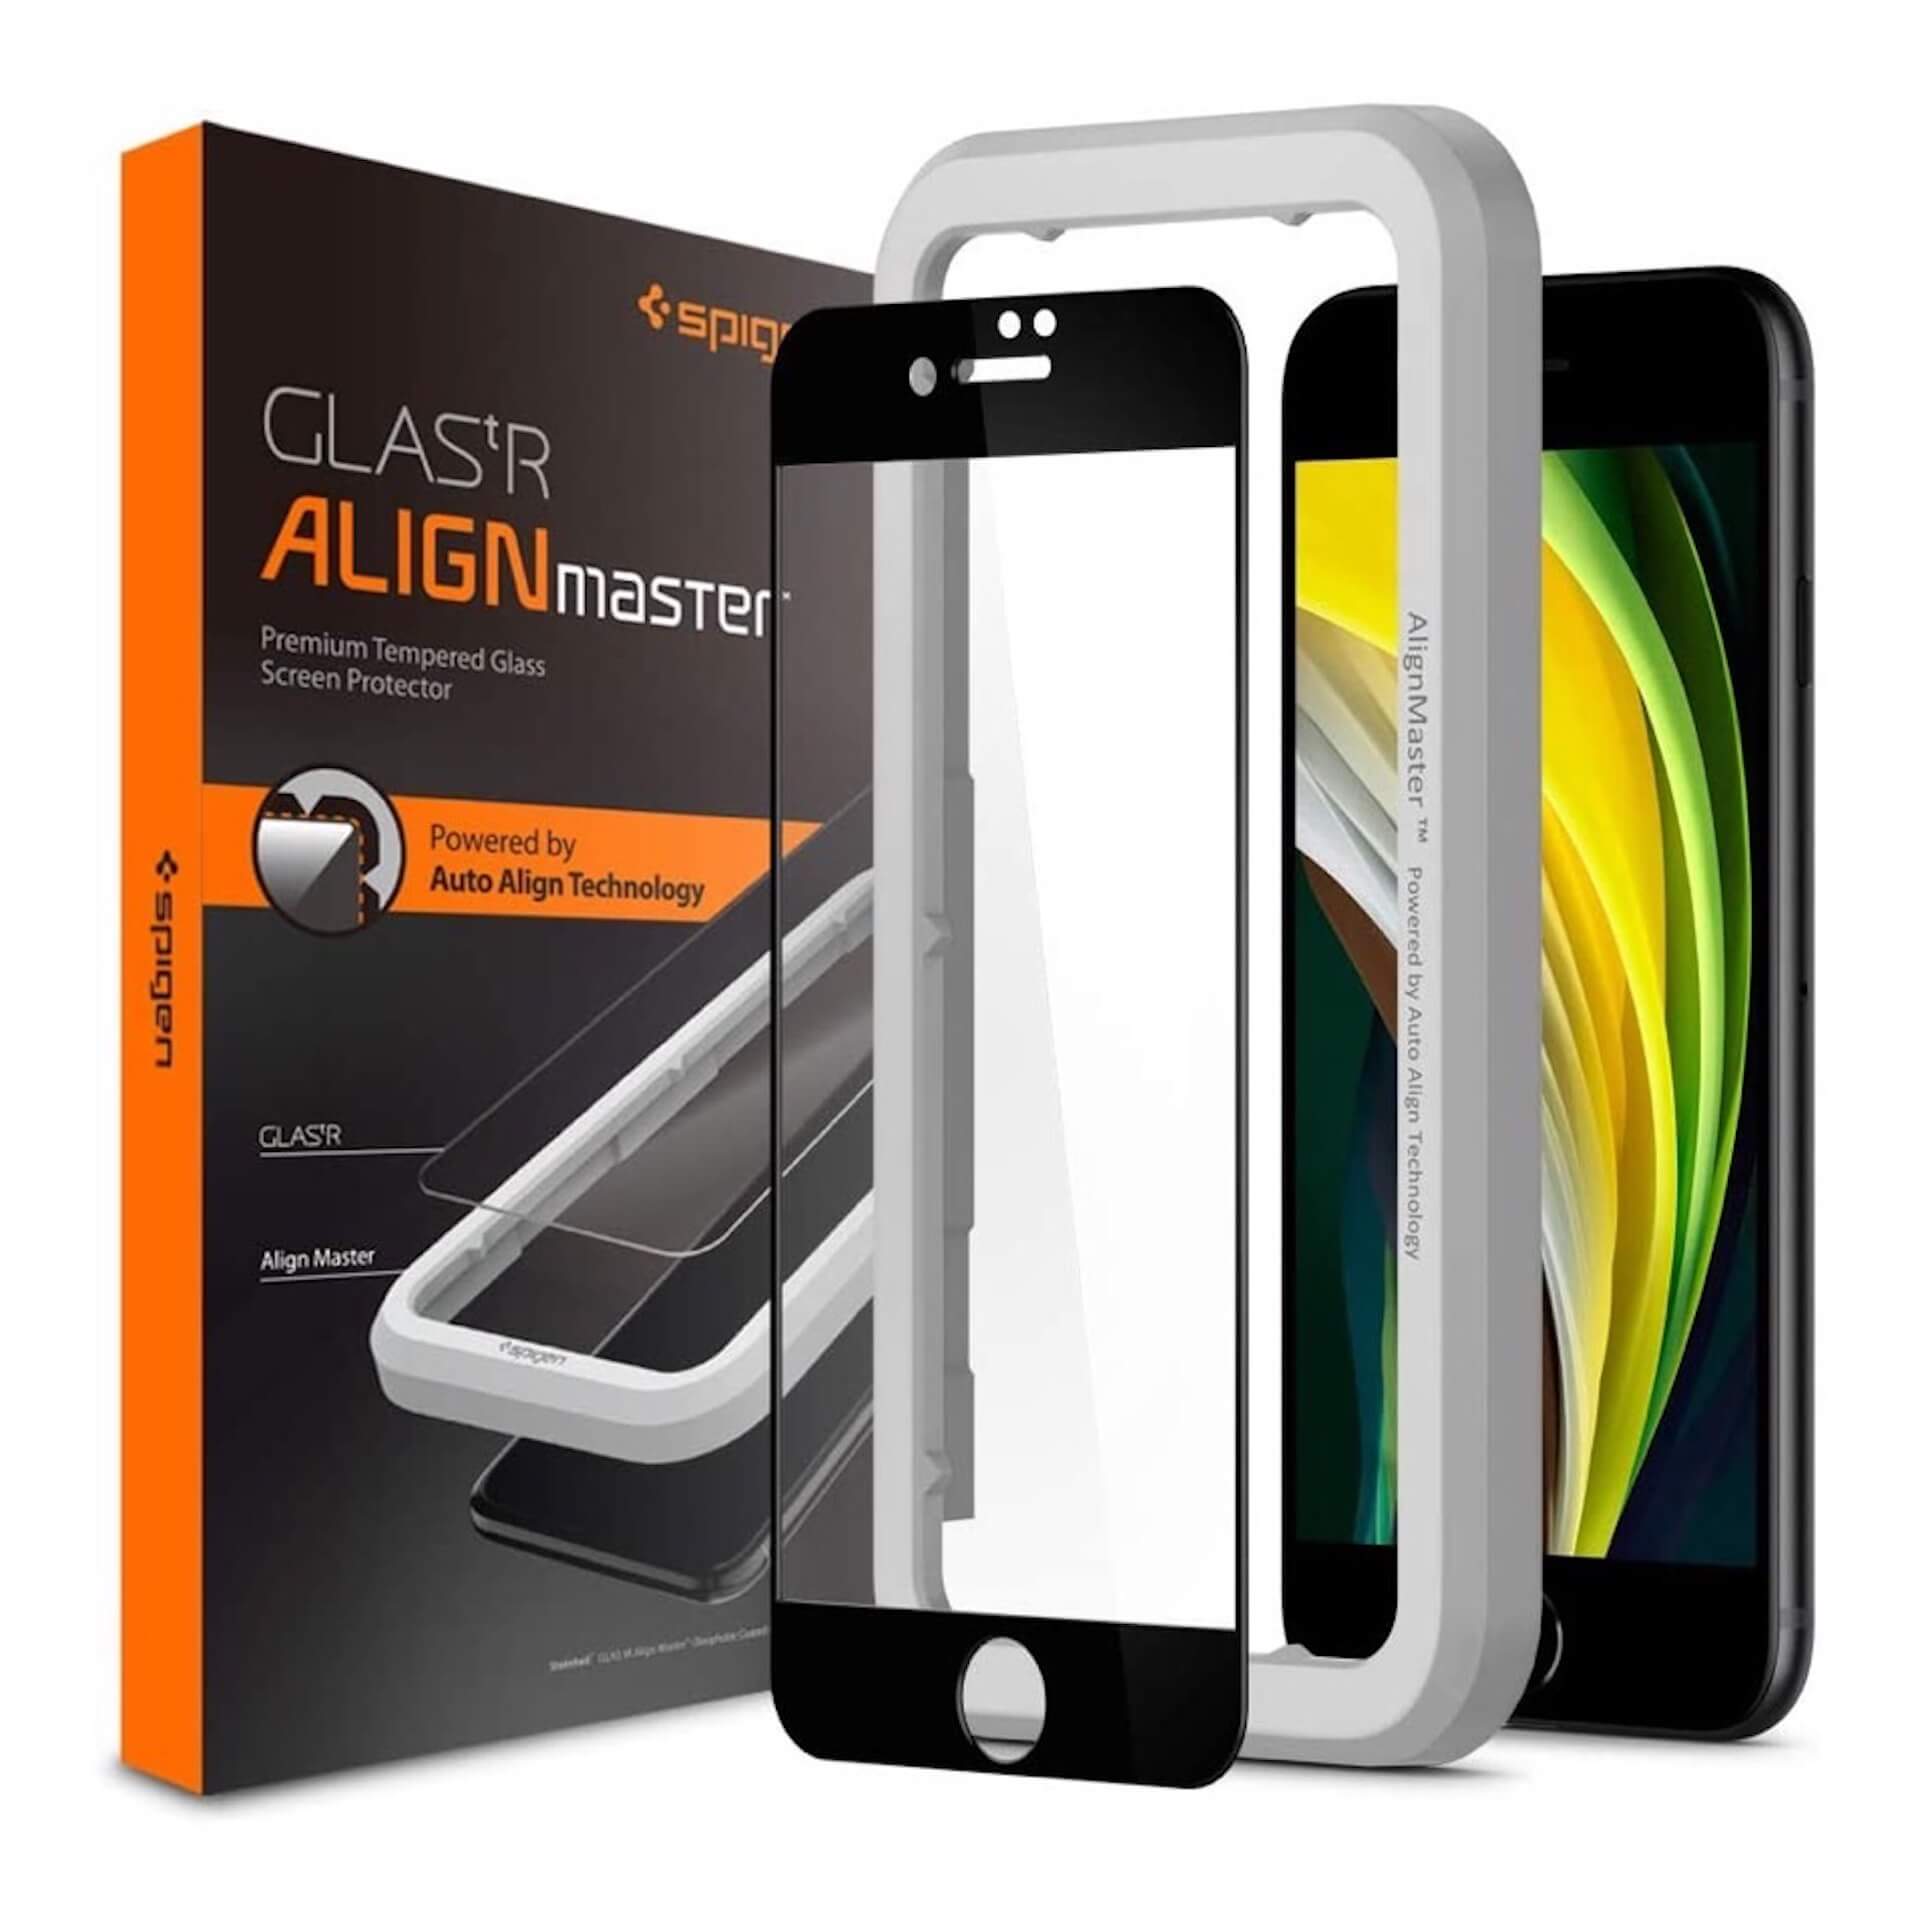 第2世代iphone Se用の保護フィルムを簡単に貼れる 衝撃に強い Align Master フルカバーブラック が発売 Qetic